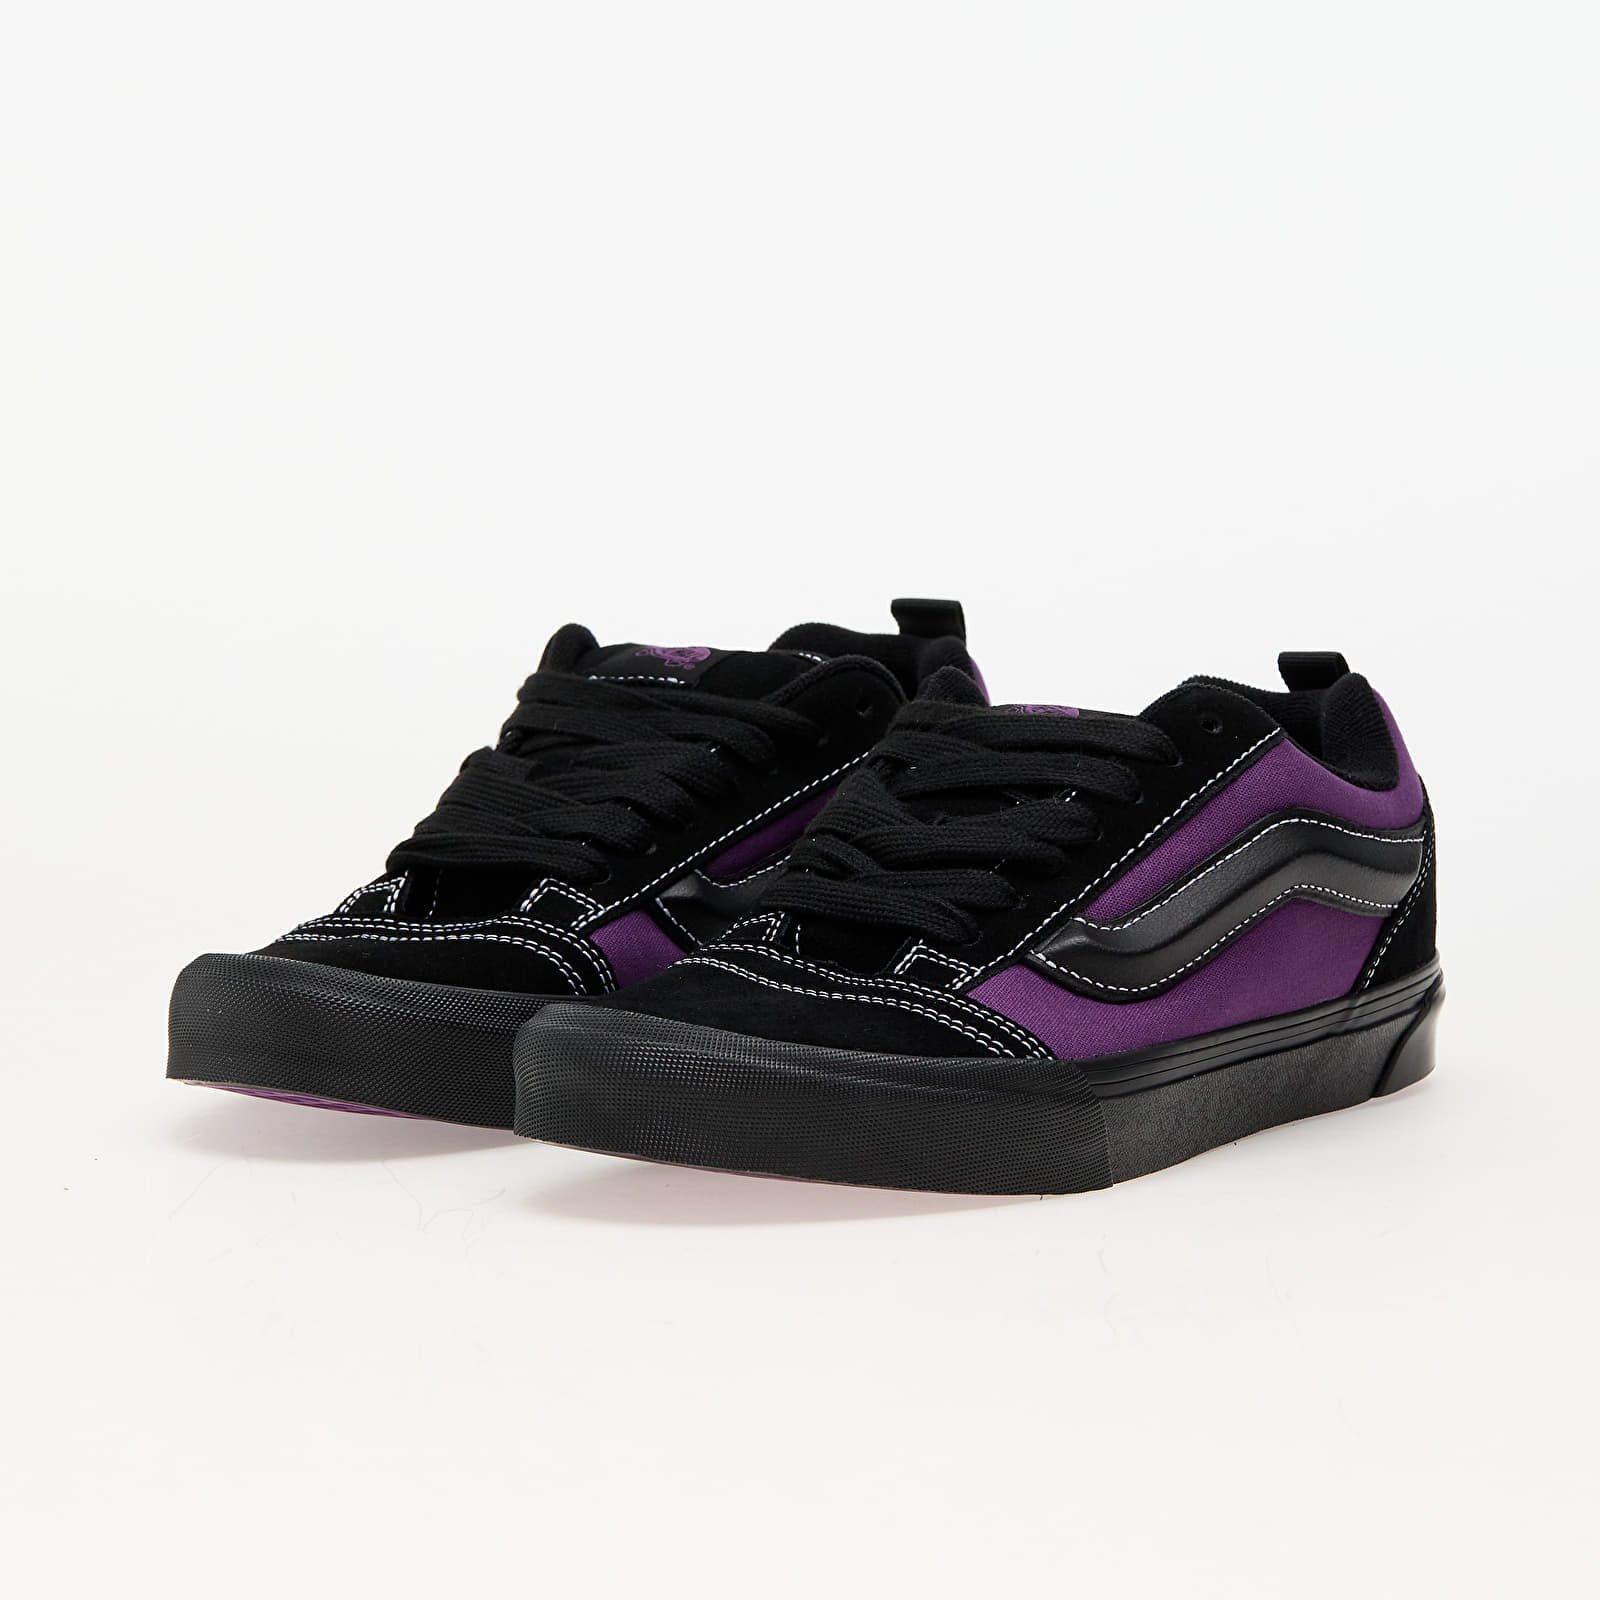 Knu Skool 2-Tone Purple/ Black, Low-top sneakers